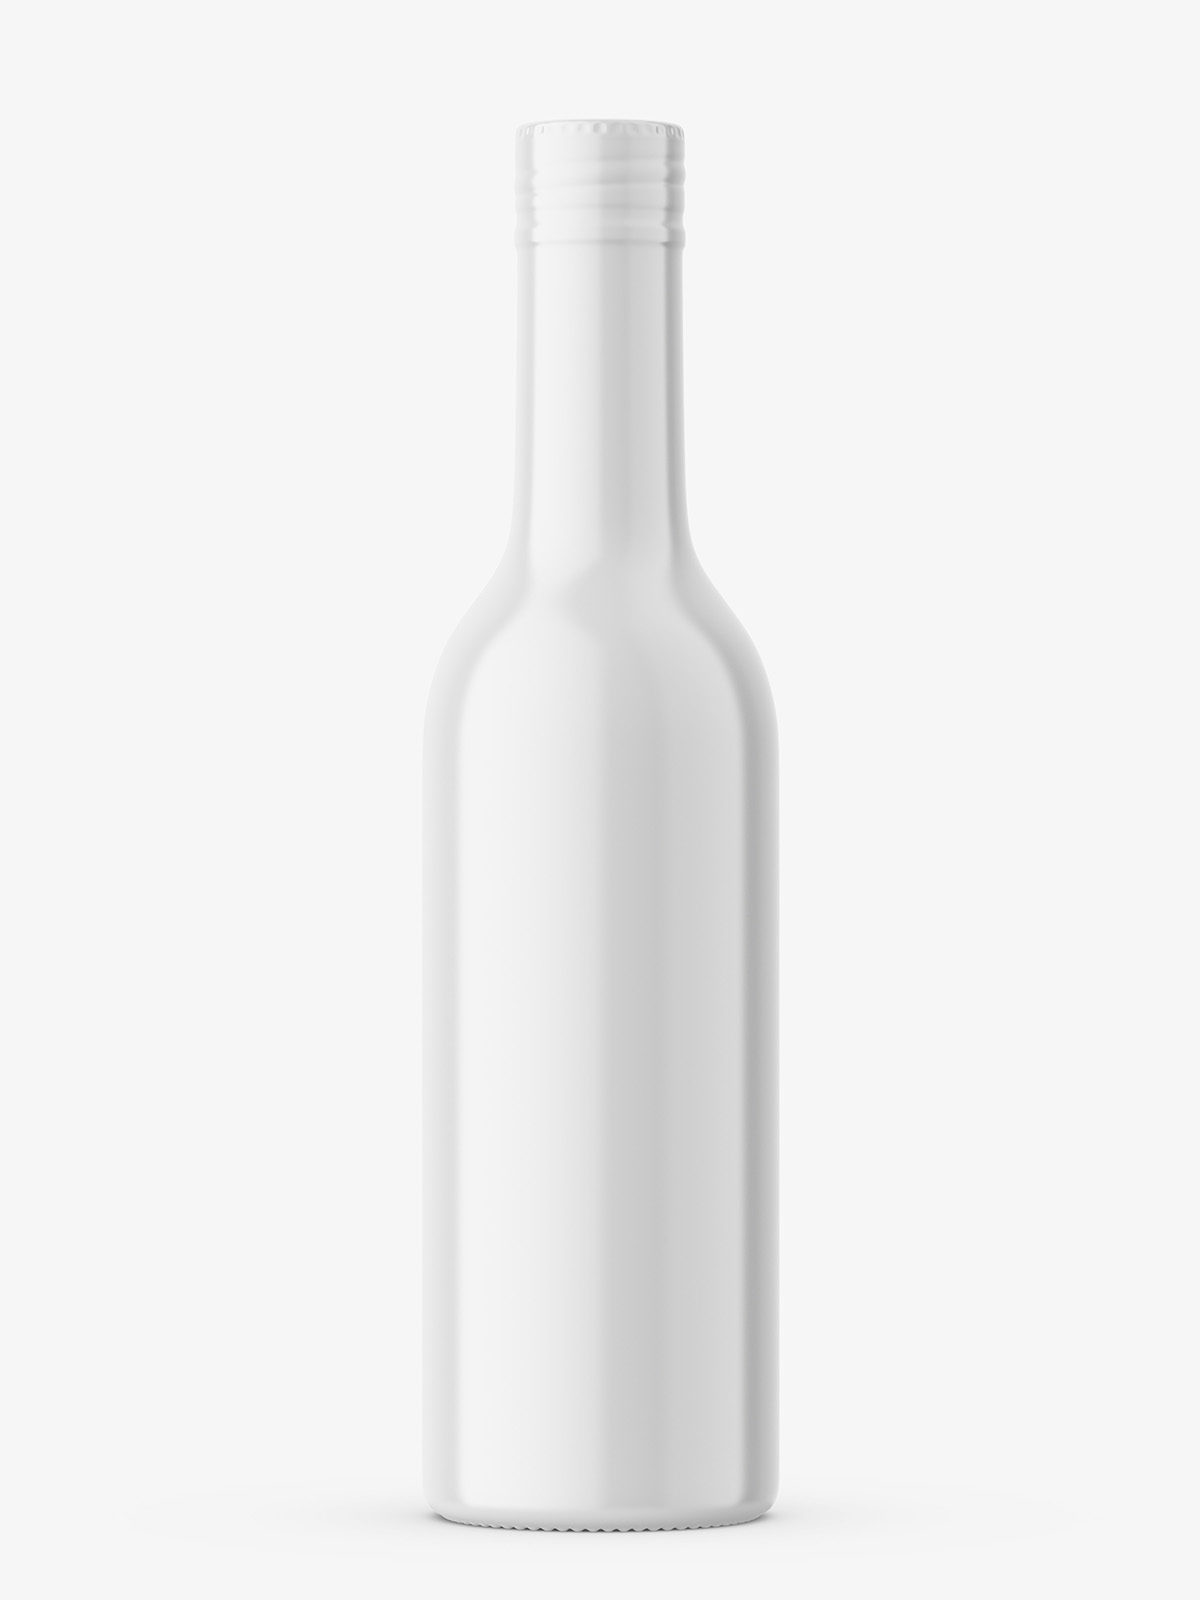 Download Liquor Bottle Mockup With Shrink Sleeve Label Smarty Mockups